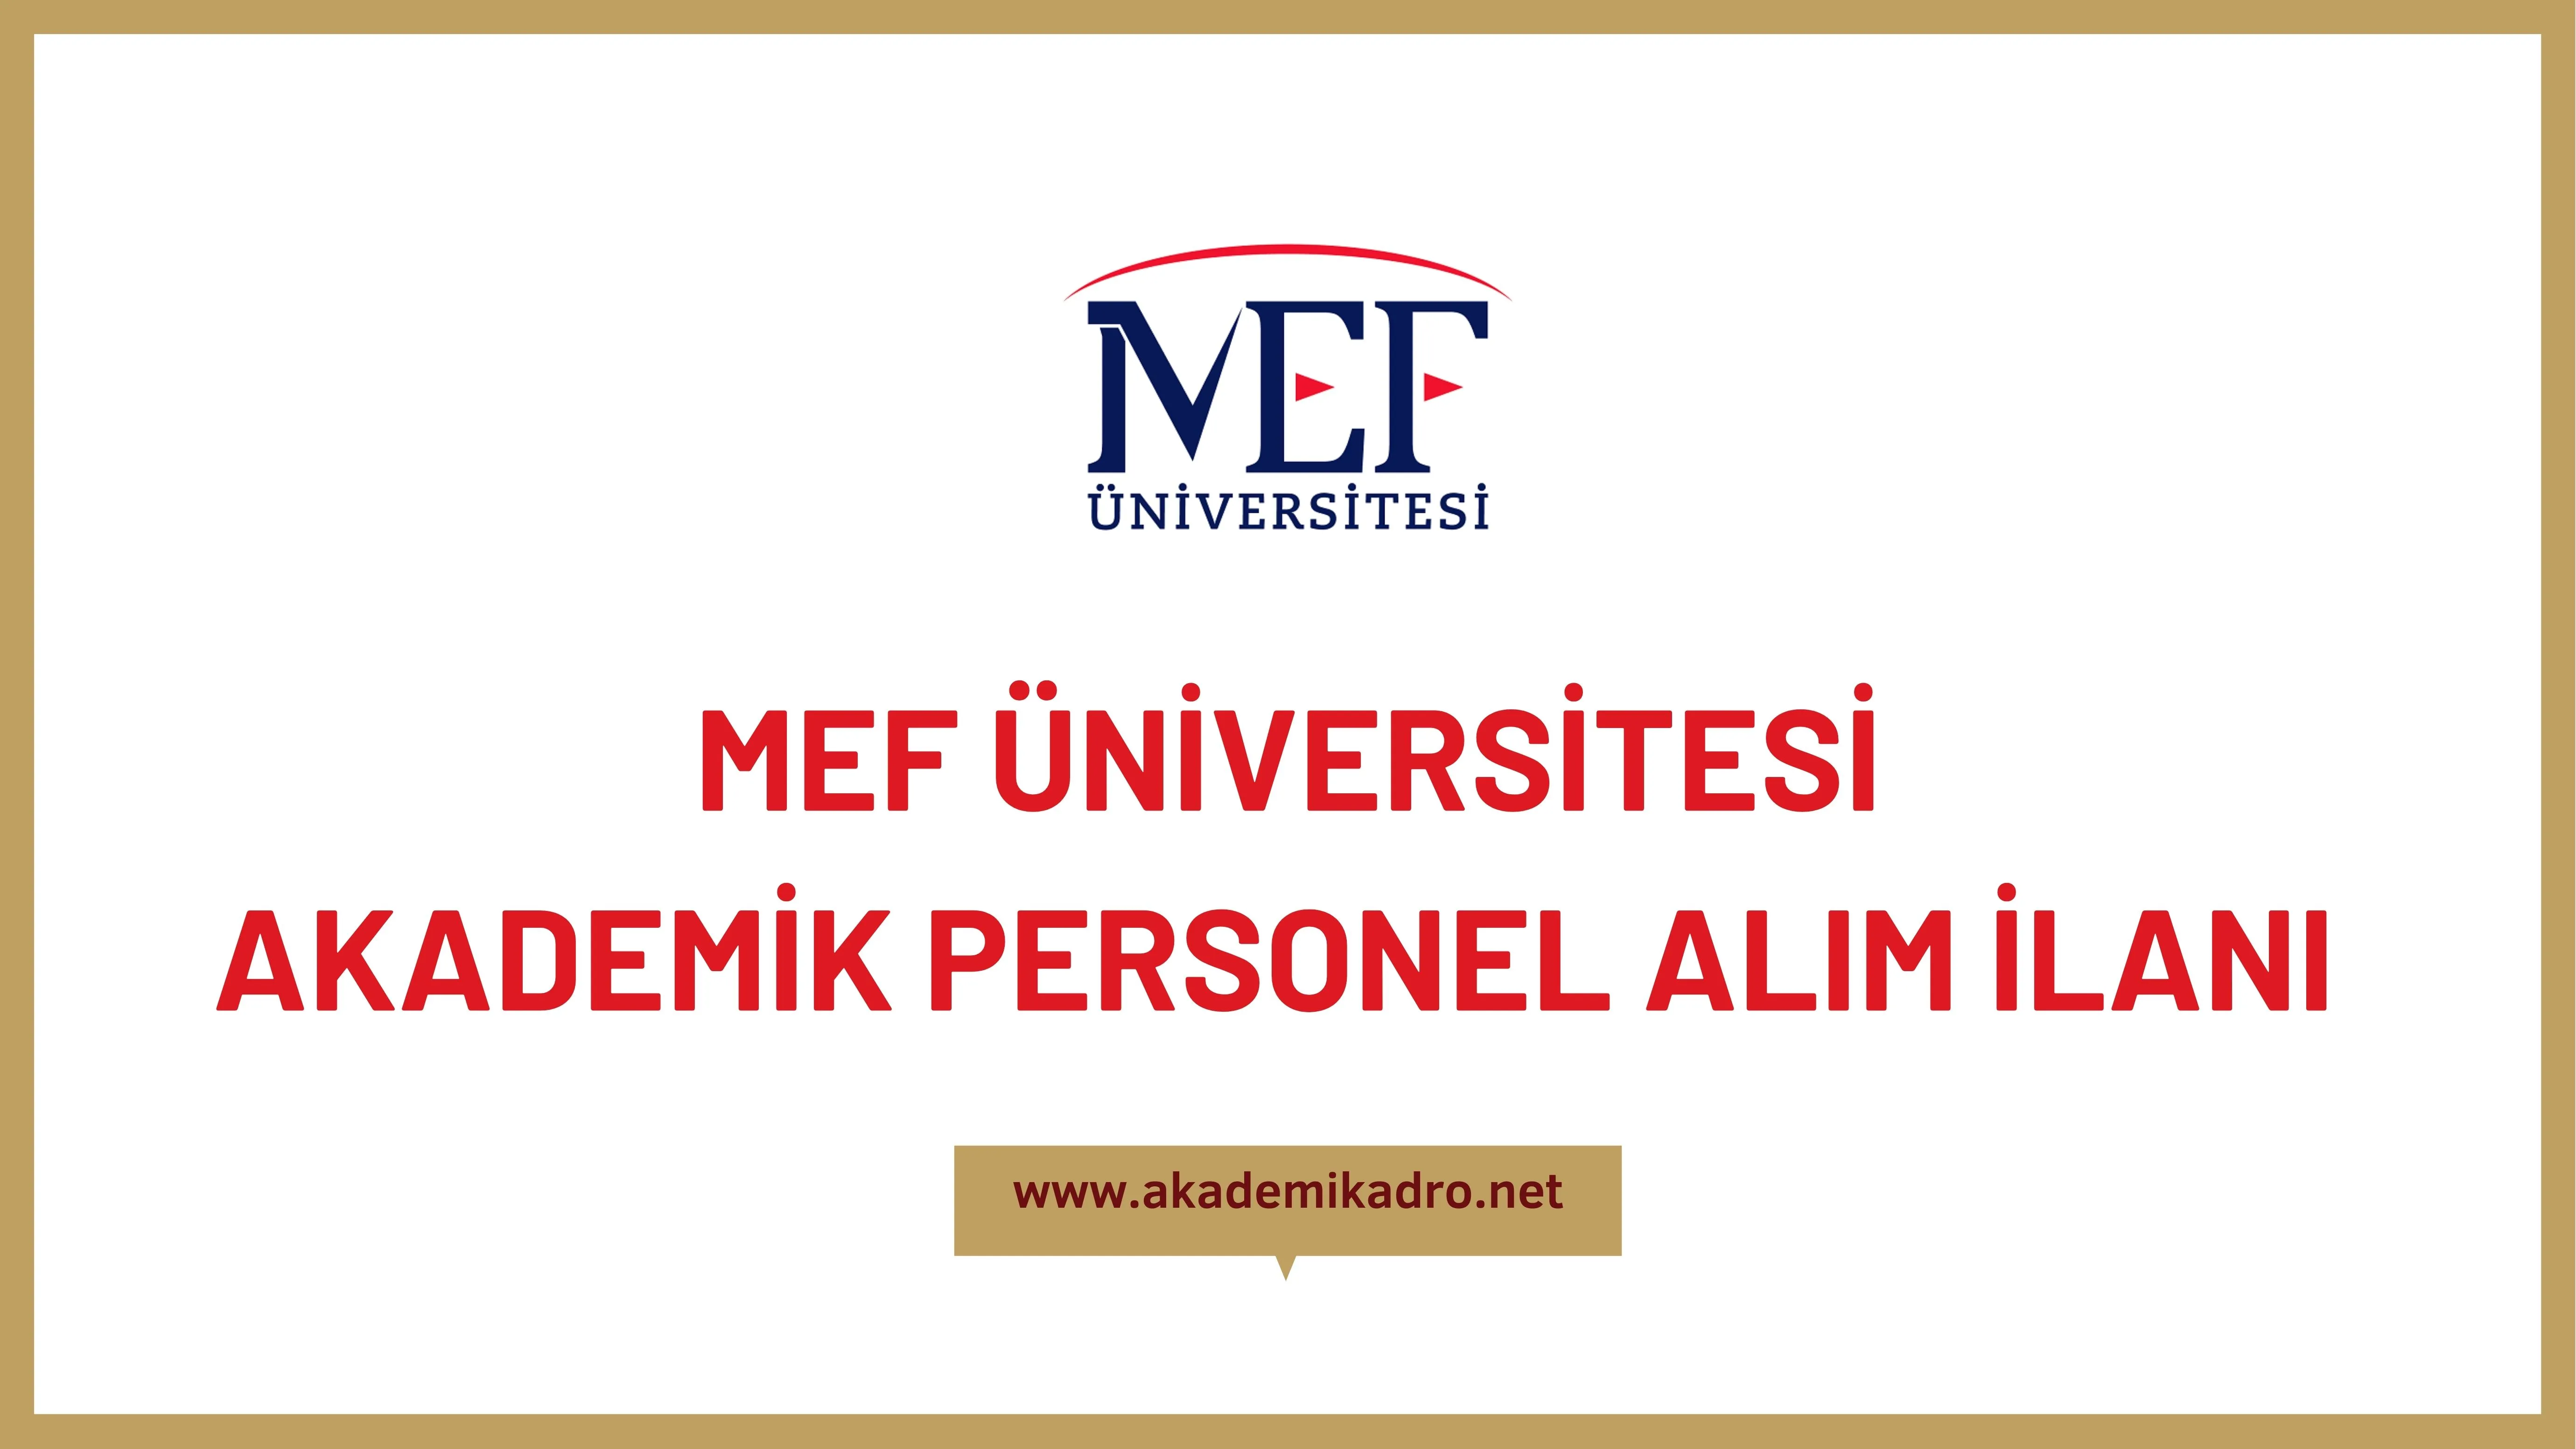 MEF Üniversitesi birçok alandan 9 akademik personel alacak.